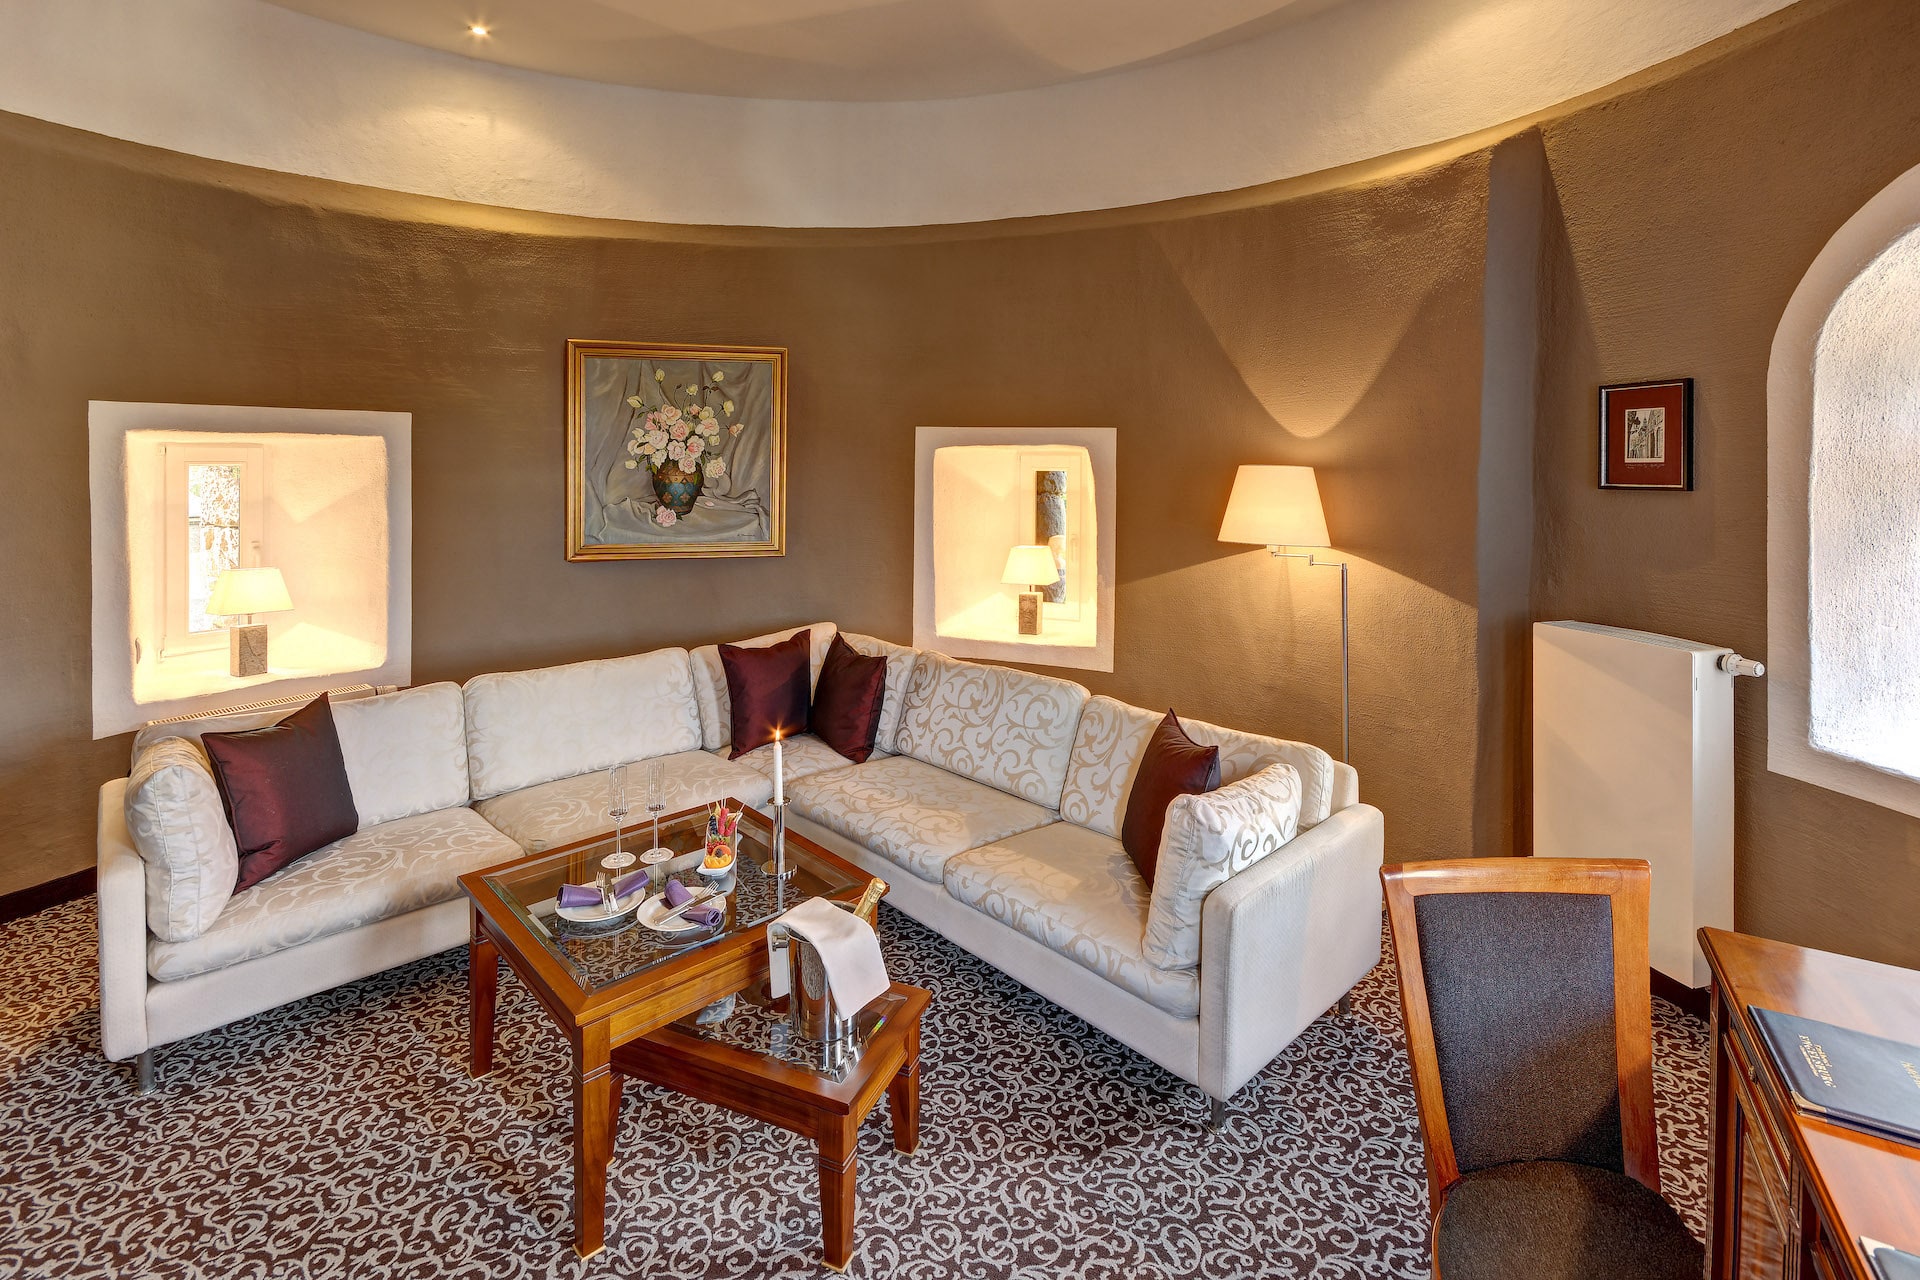 sofa living area in turmsuite der engelsburg burghotel deutschland hotel ruhrgebiet